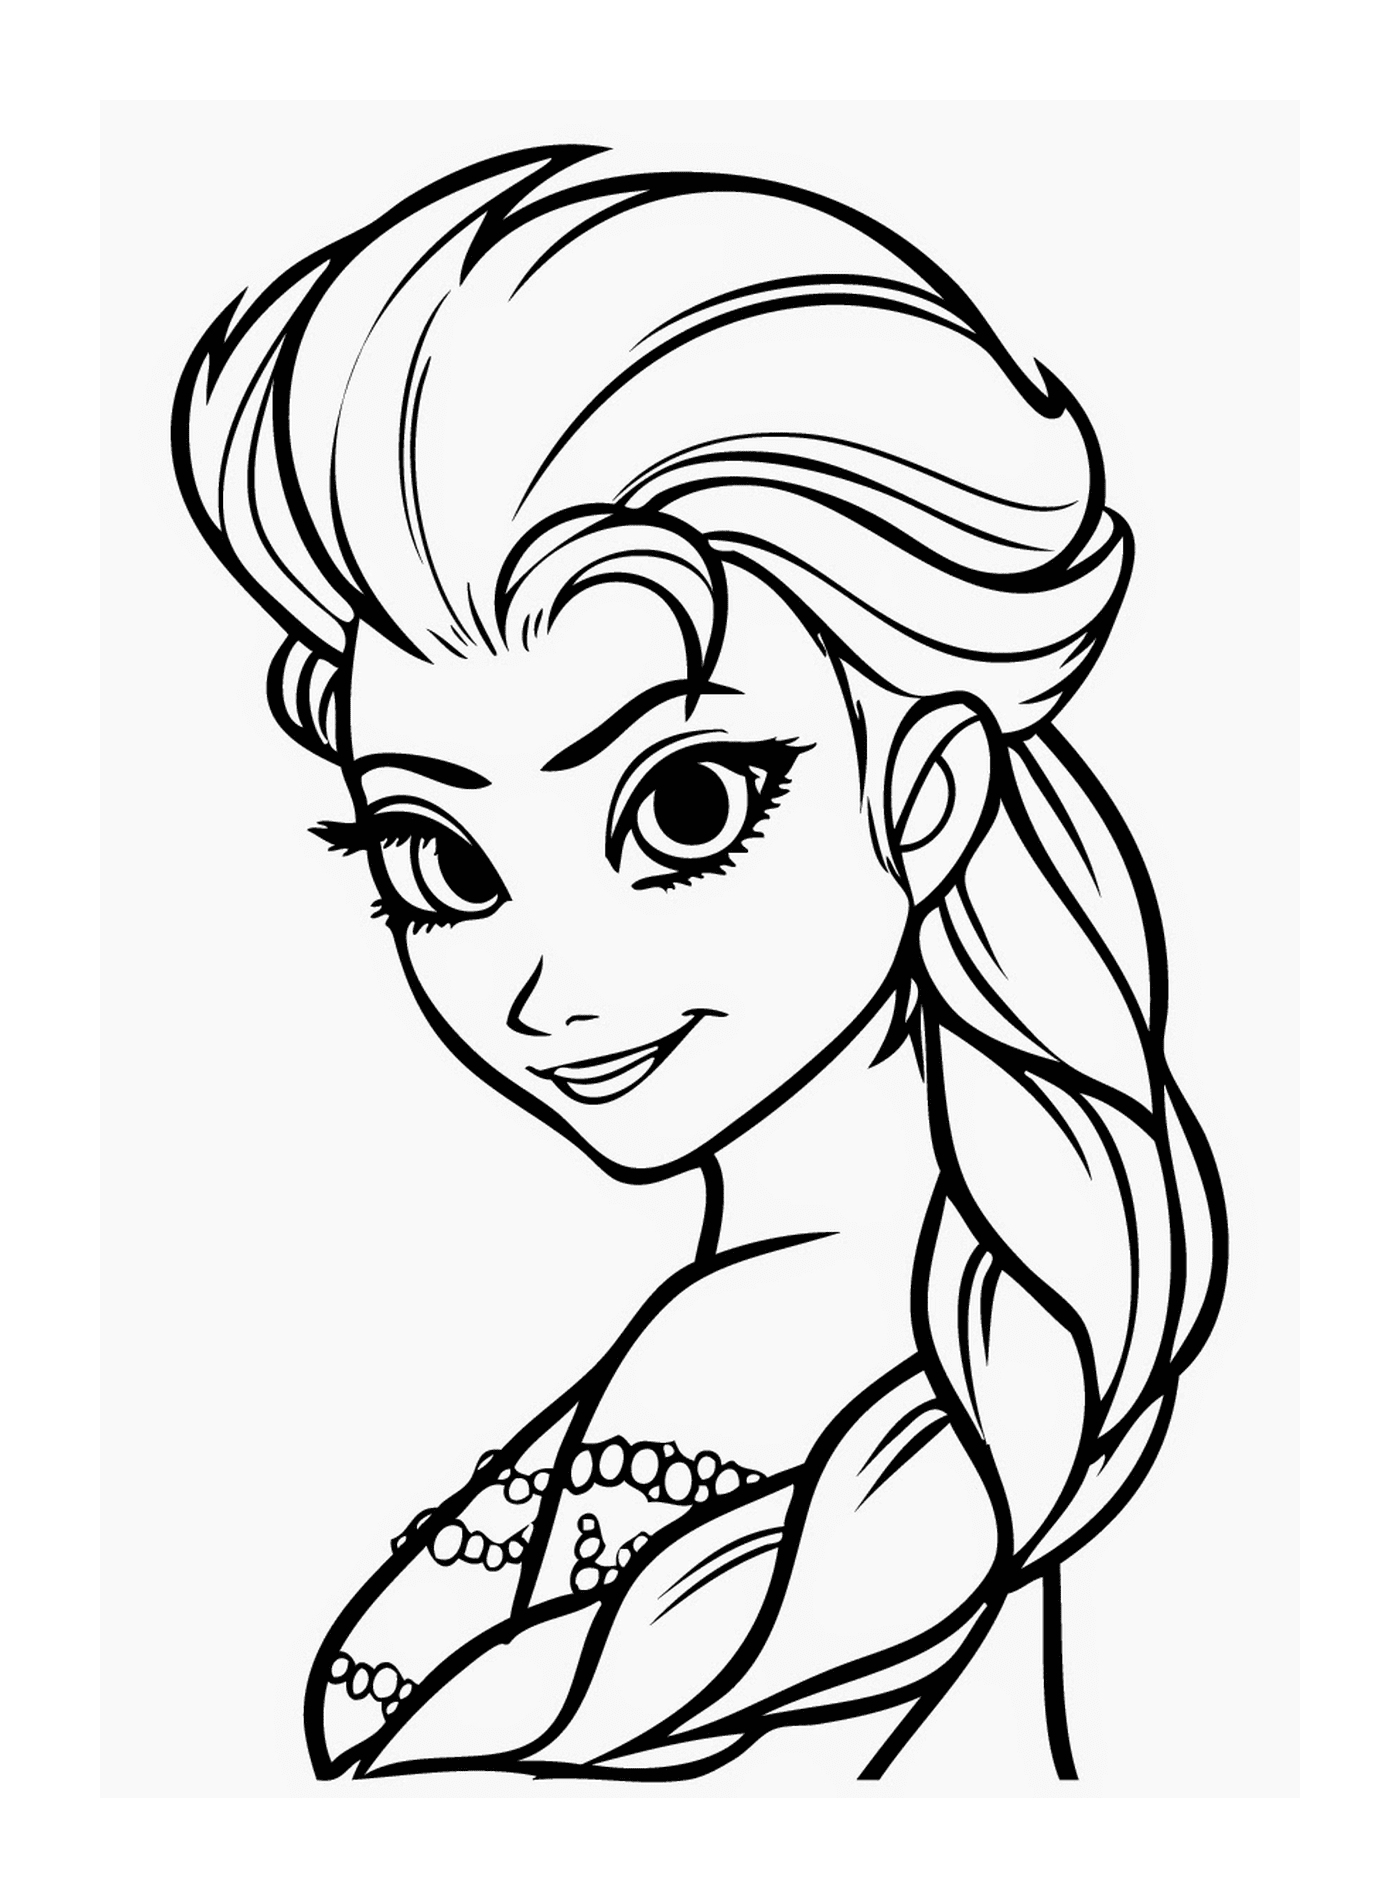  Elsa, the beautiful princess 